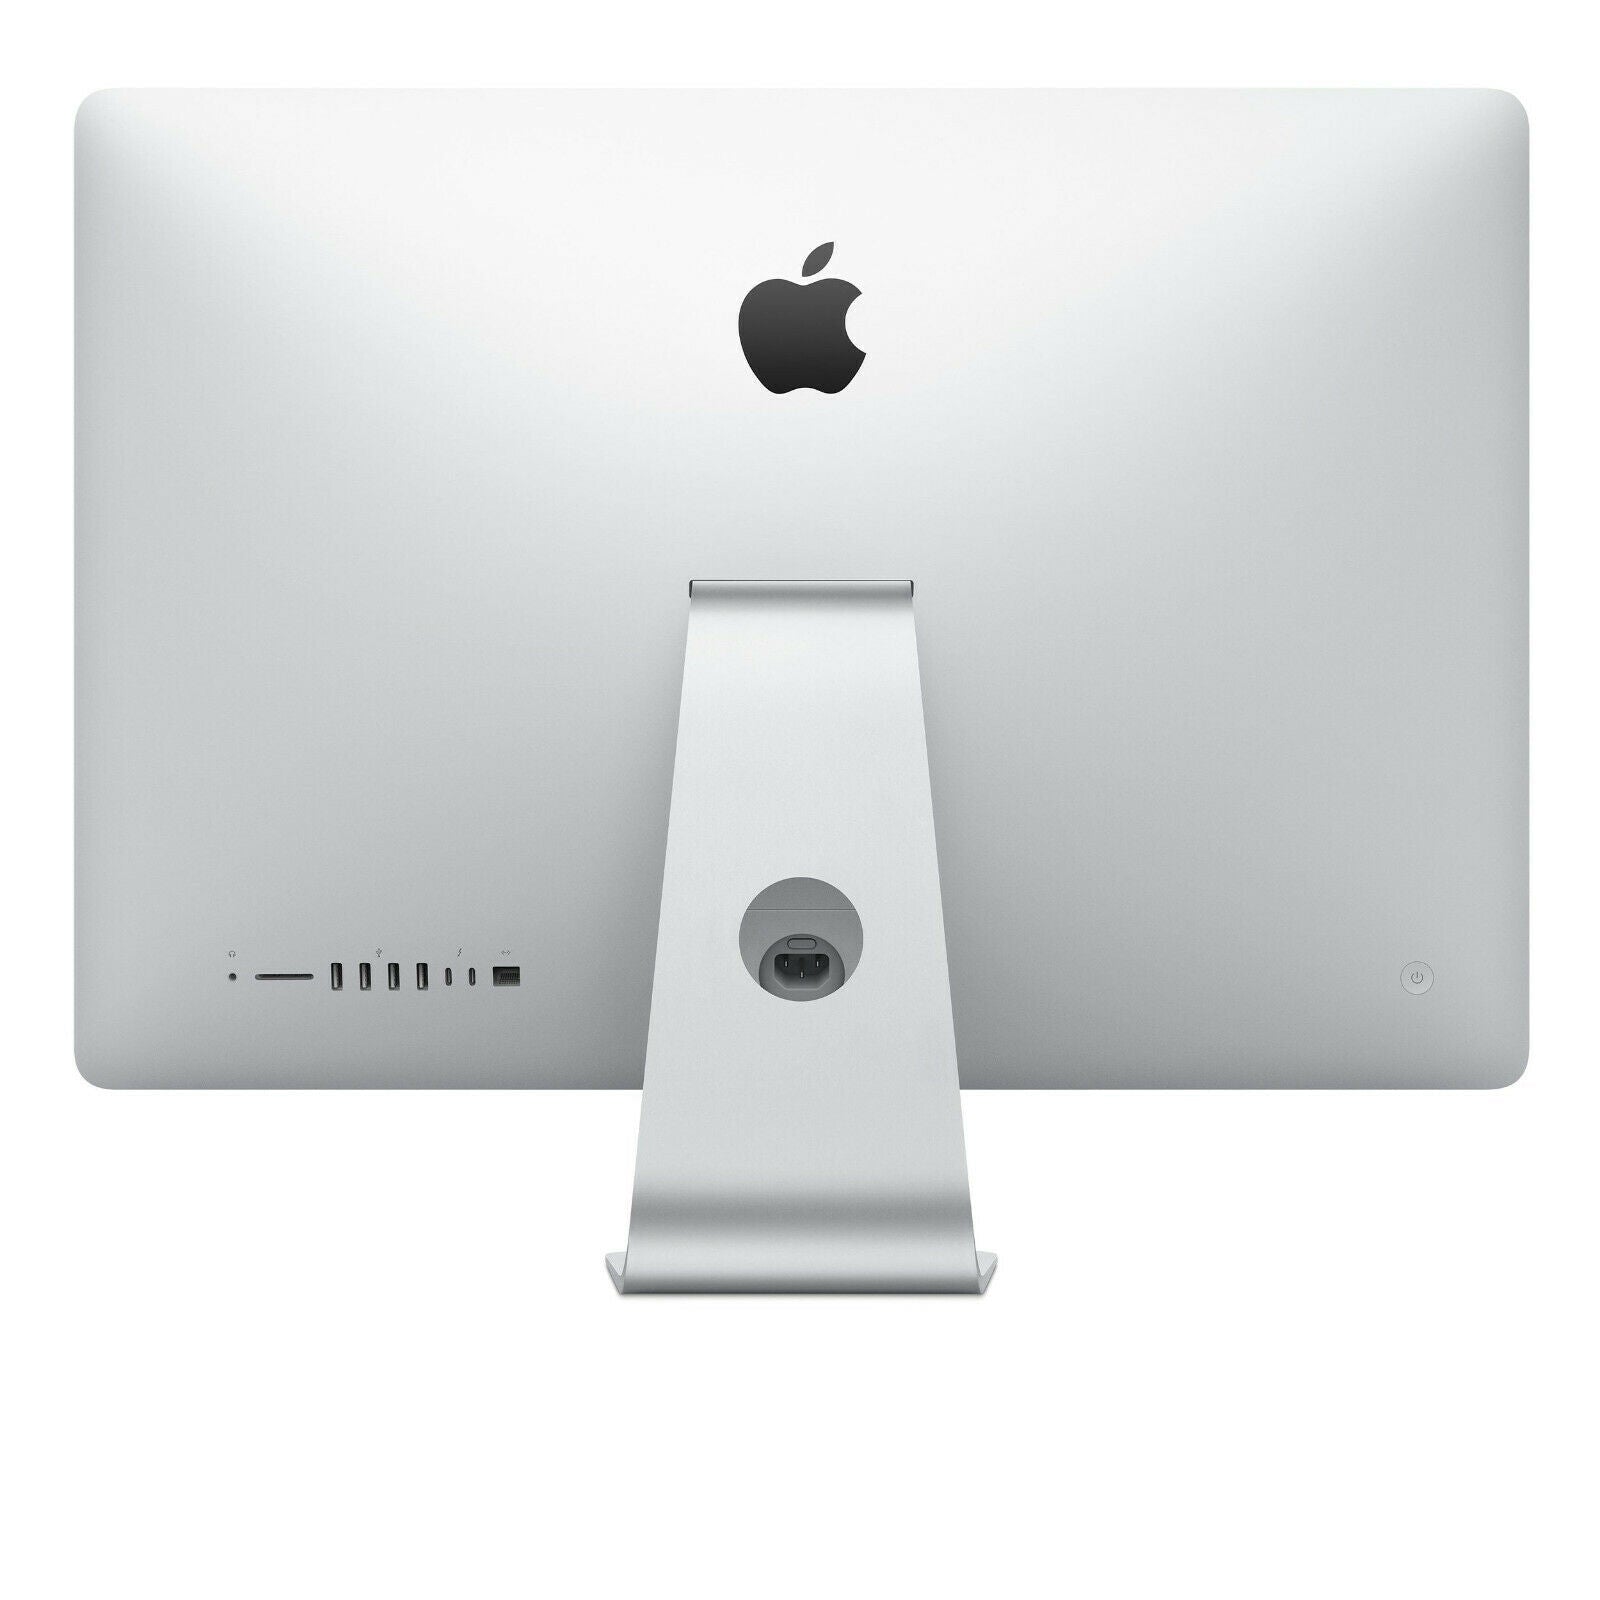 Apple iMac 21.5'' MMQA2LL/A (2017), Intel Core i5 8GB RAM 256GB SSD - Silver - Refurbished Good